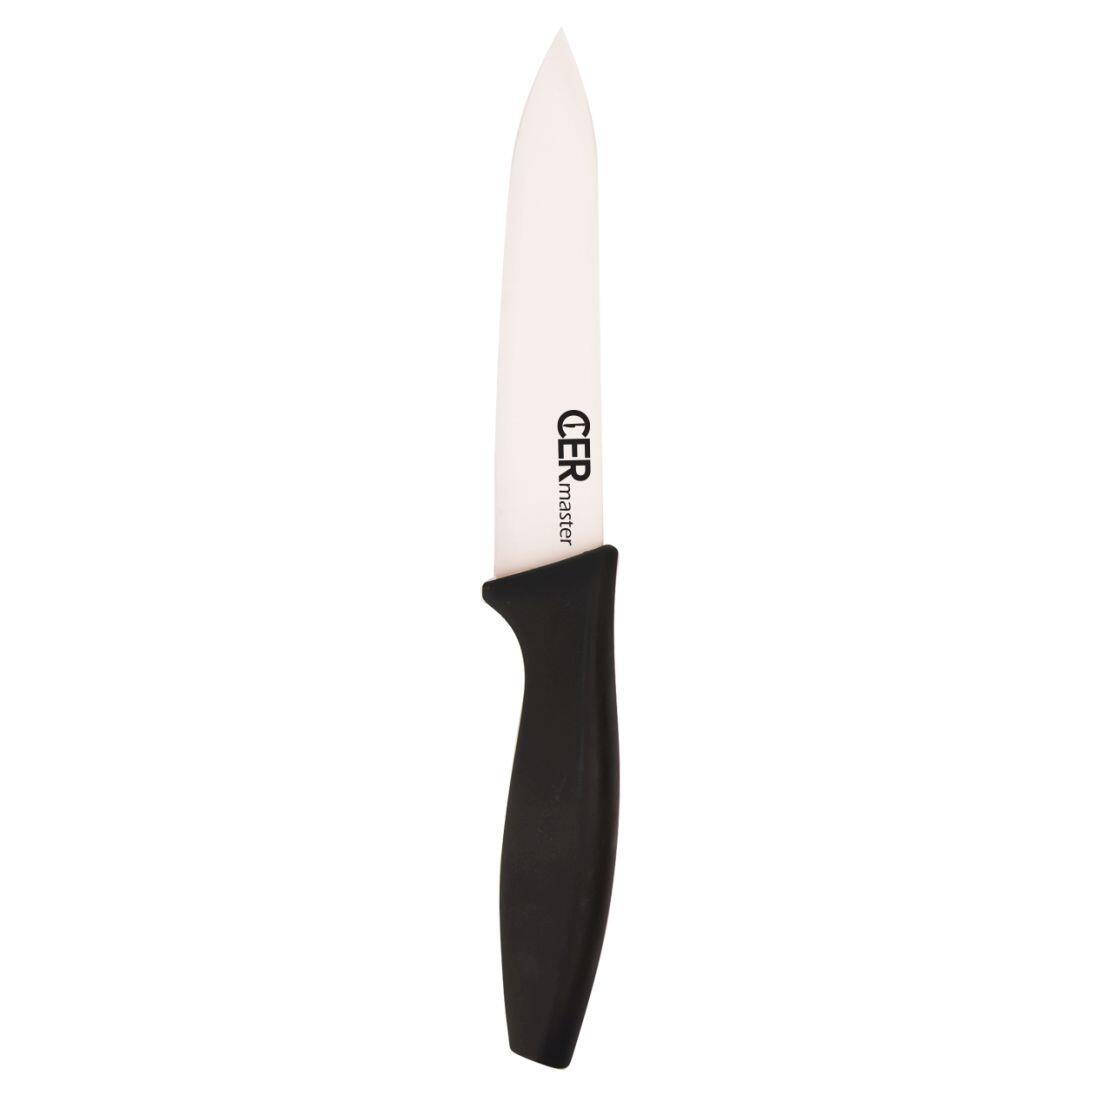 nůž keramický 12,5cm univerzální CERMASTER 0.06 Kg MAXMIX Sklad14 282160 18